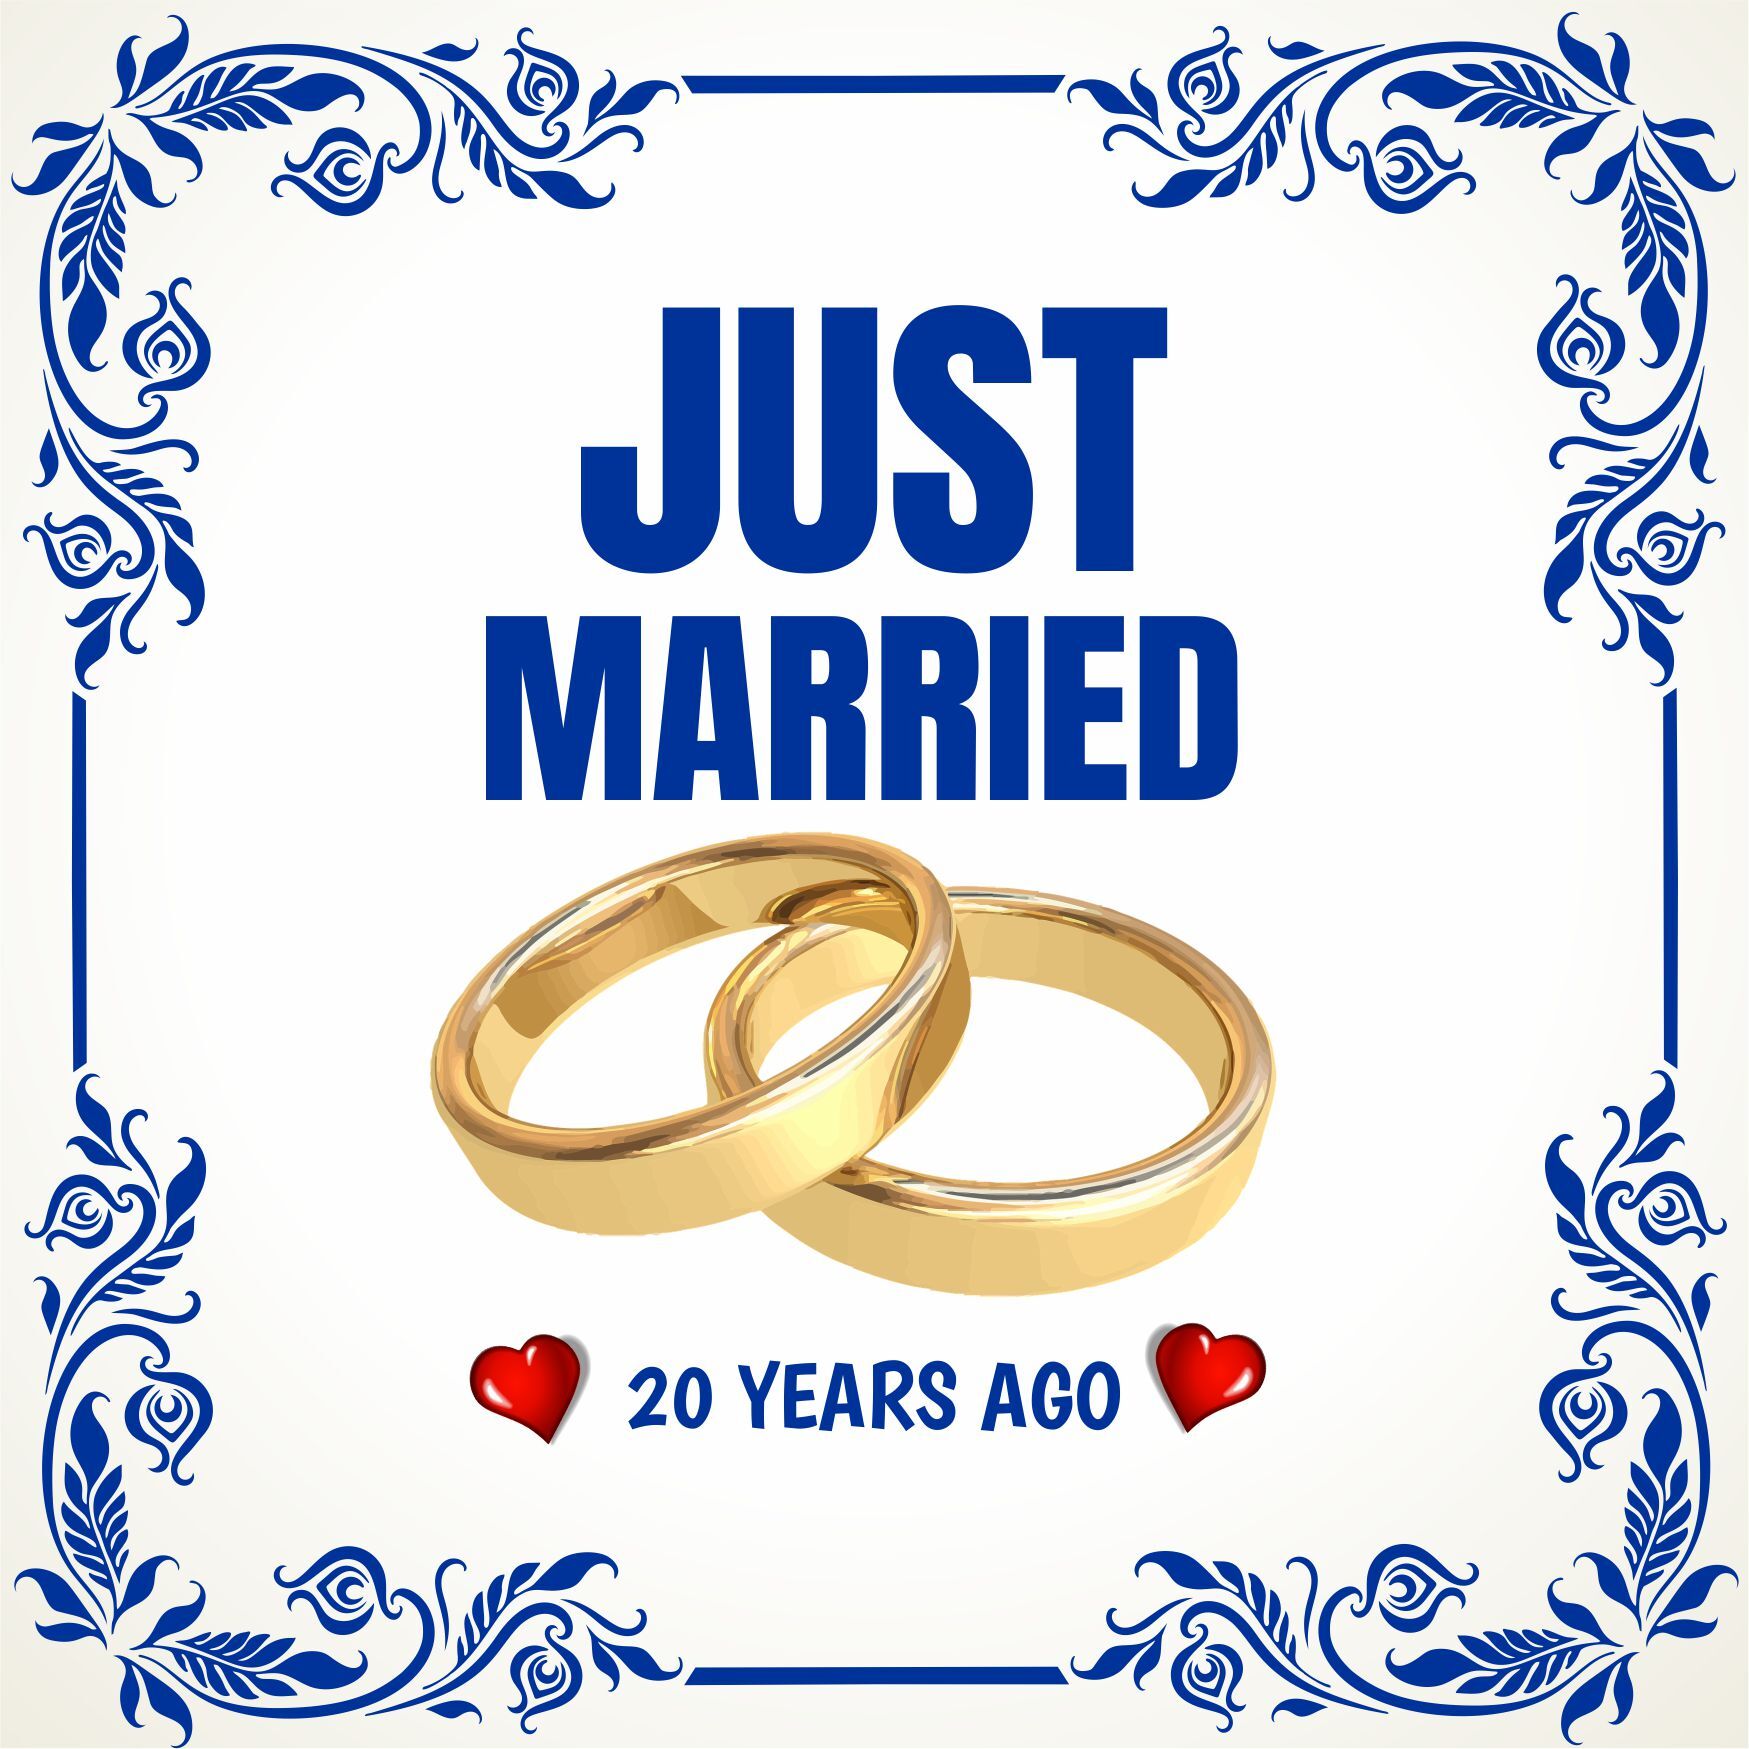 Tegel just married 20 years ago pas getrouwd 20 jaar geleden